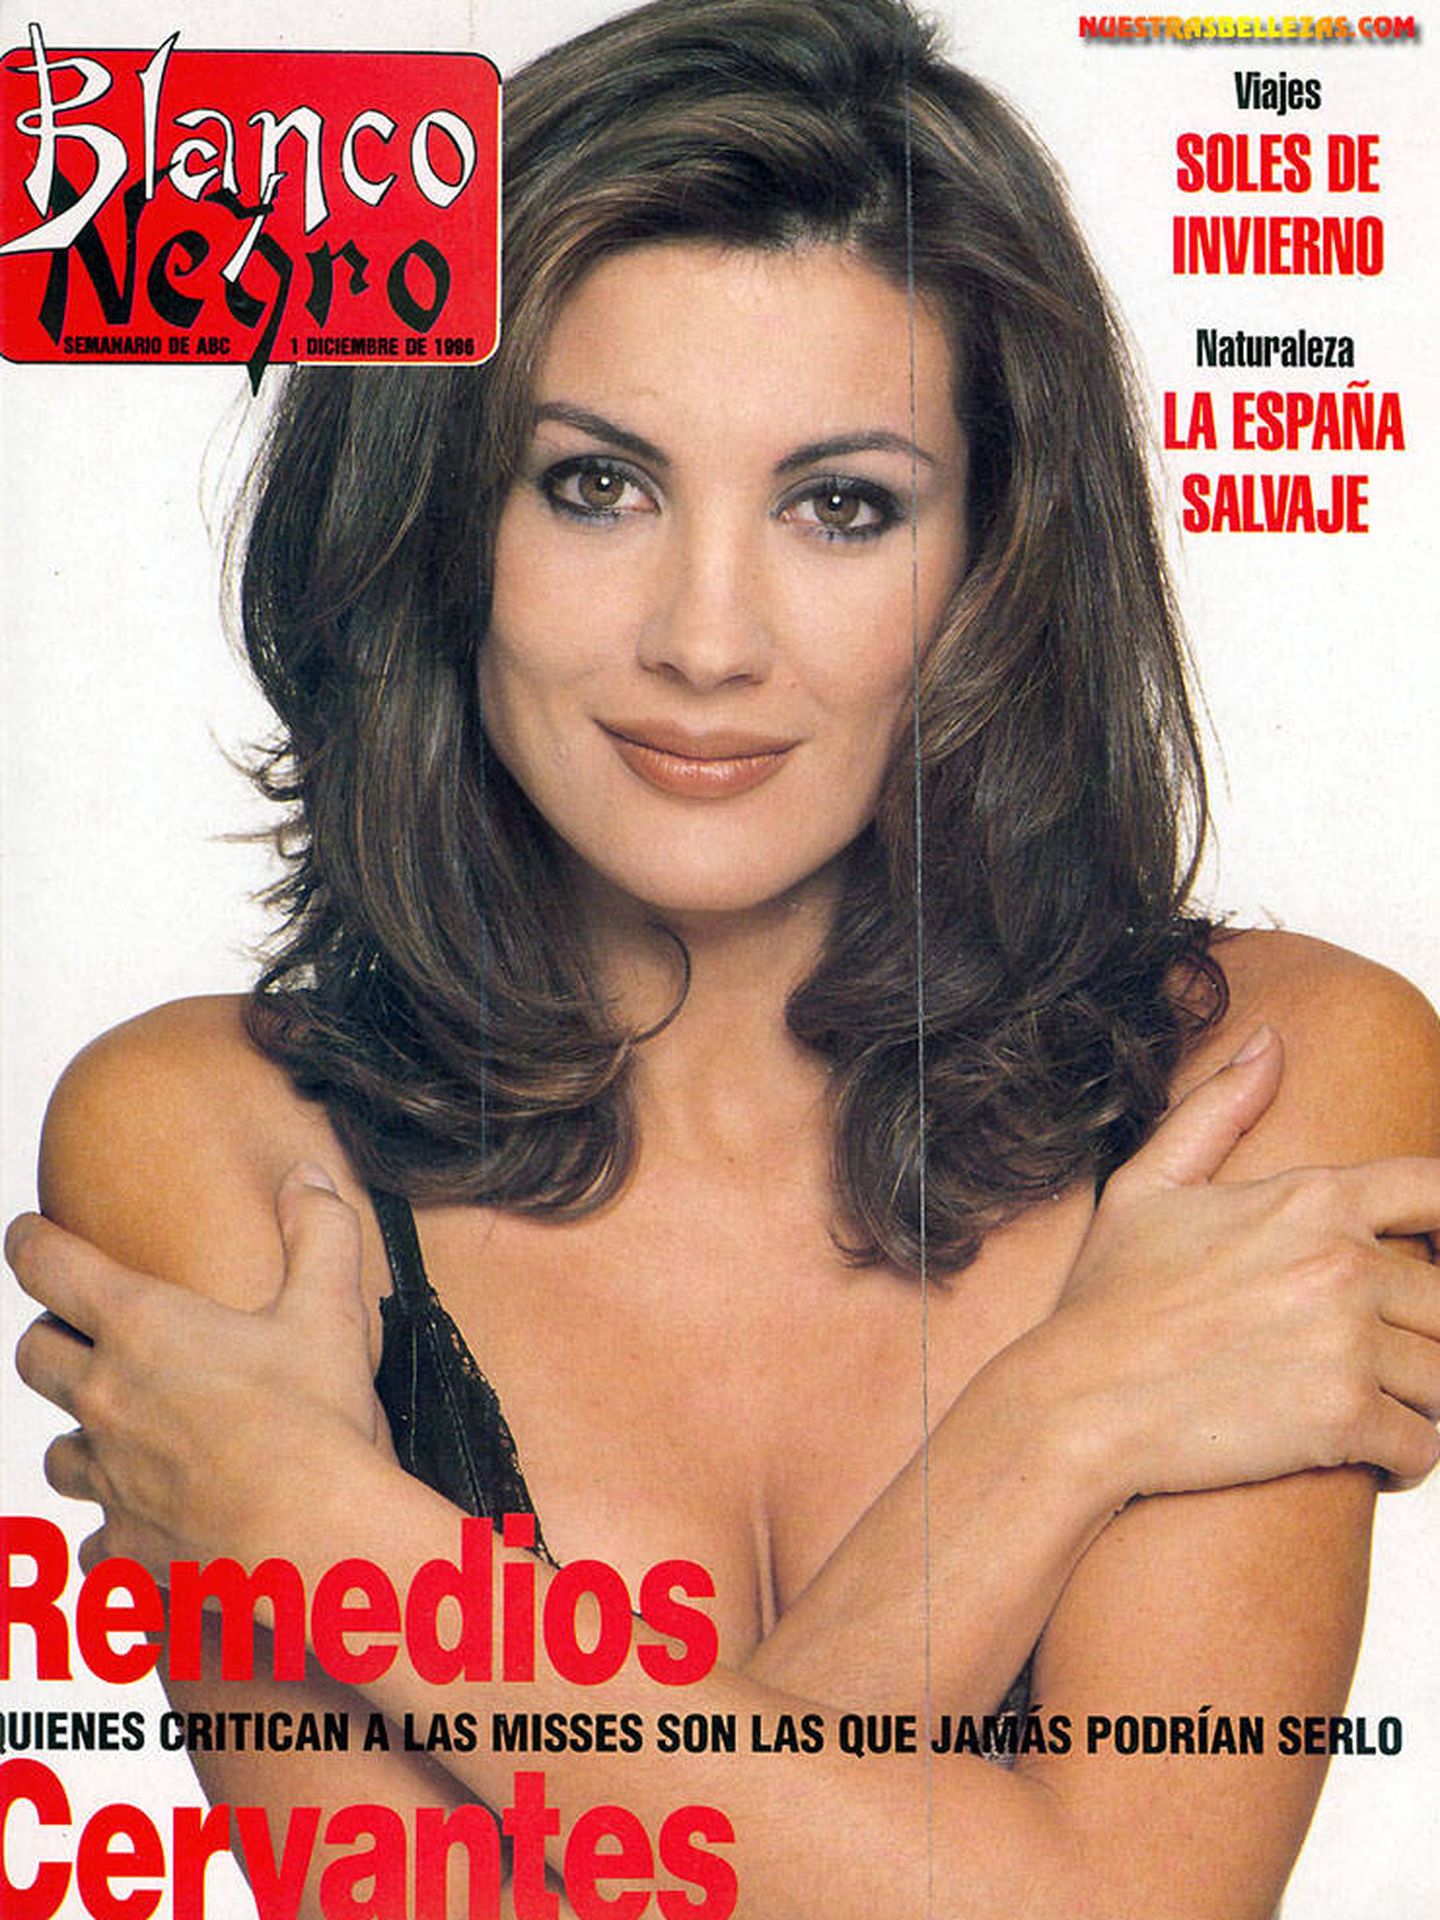 Remedios Cervantes ha sido portada en casi todos los medios desde su triunfo en Miss España 1986.